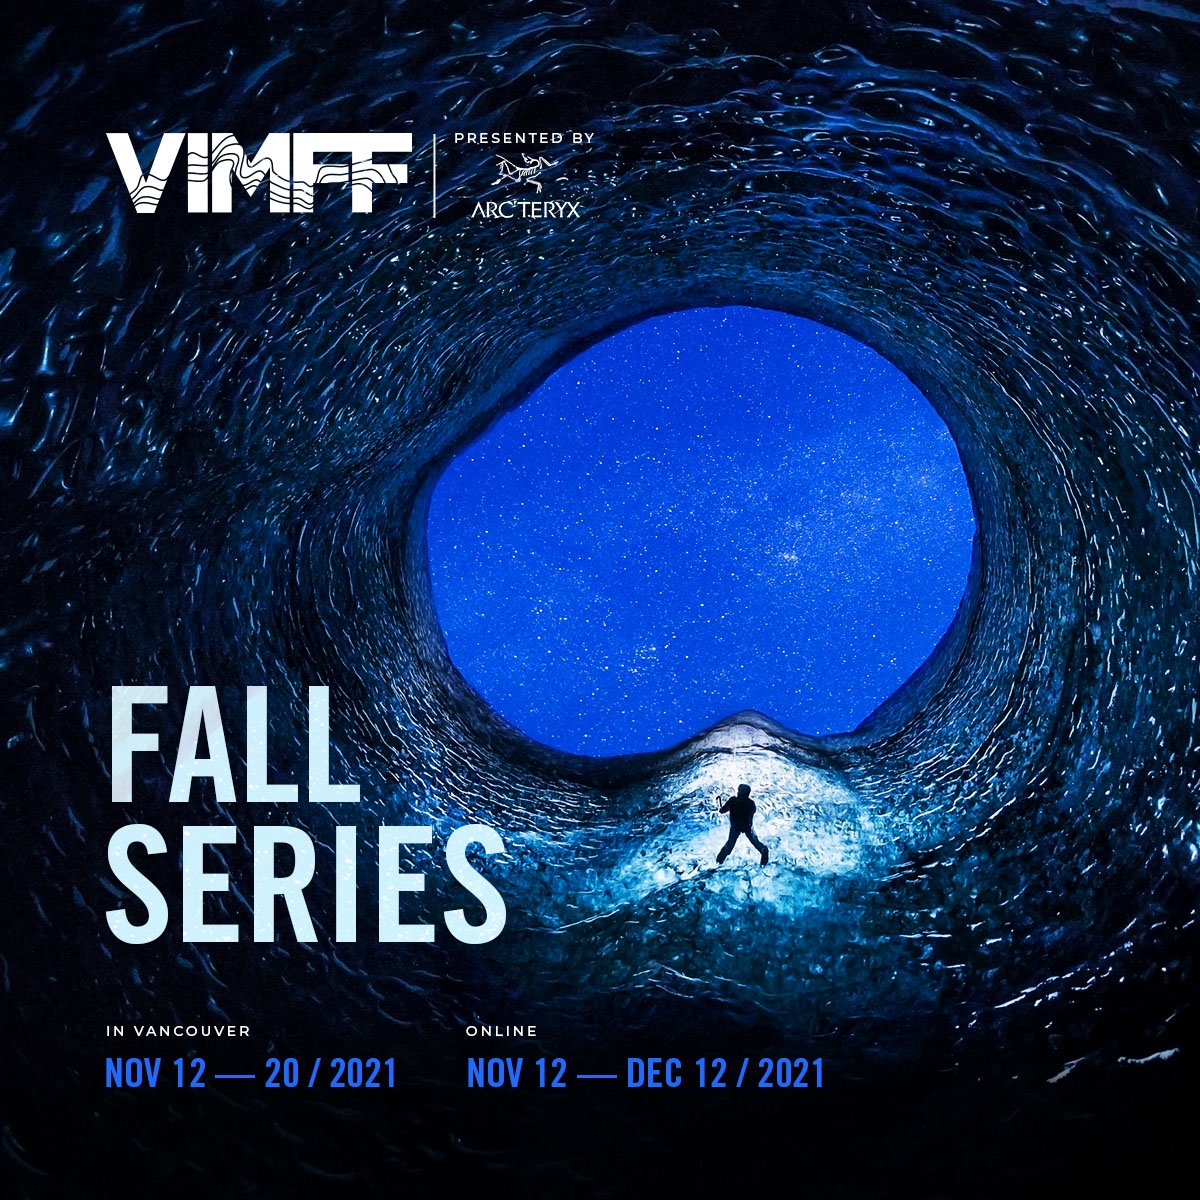 VIMFF Fall Series dates x